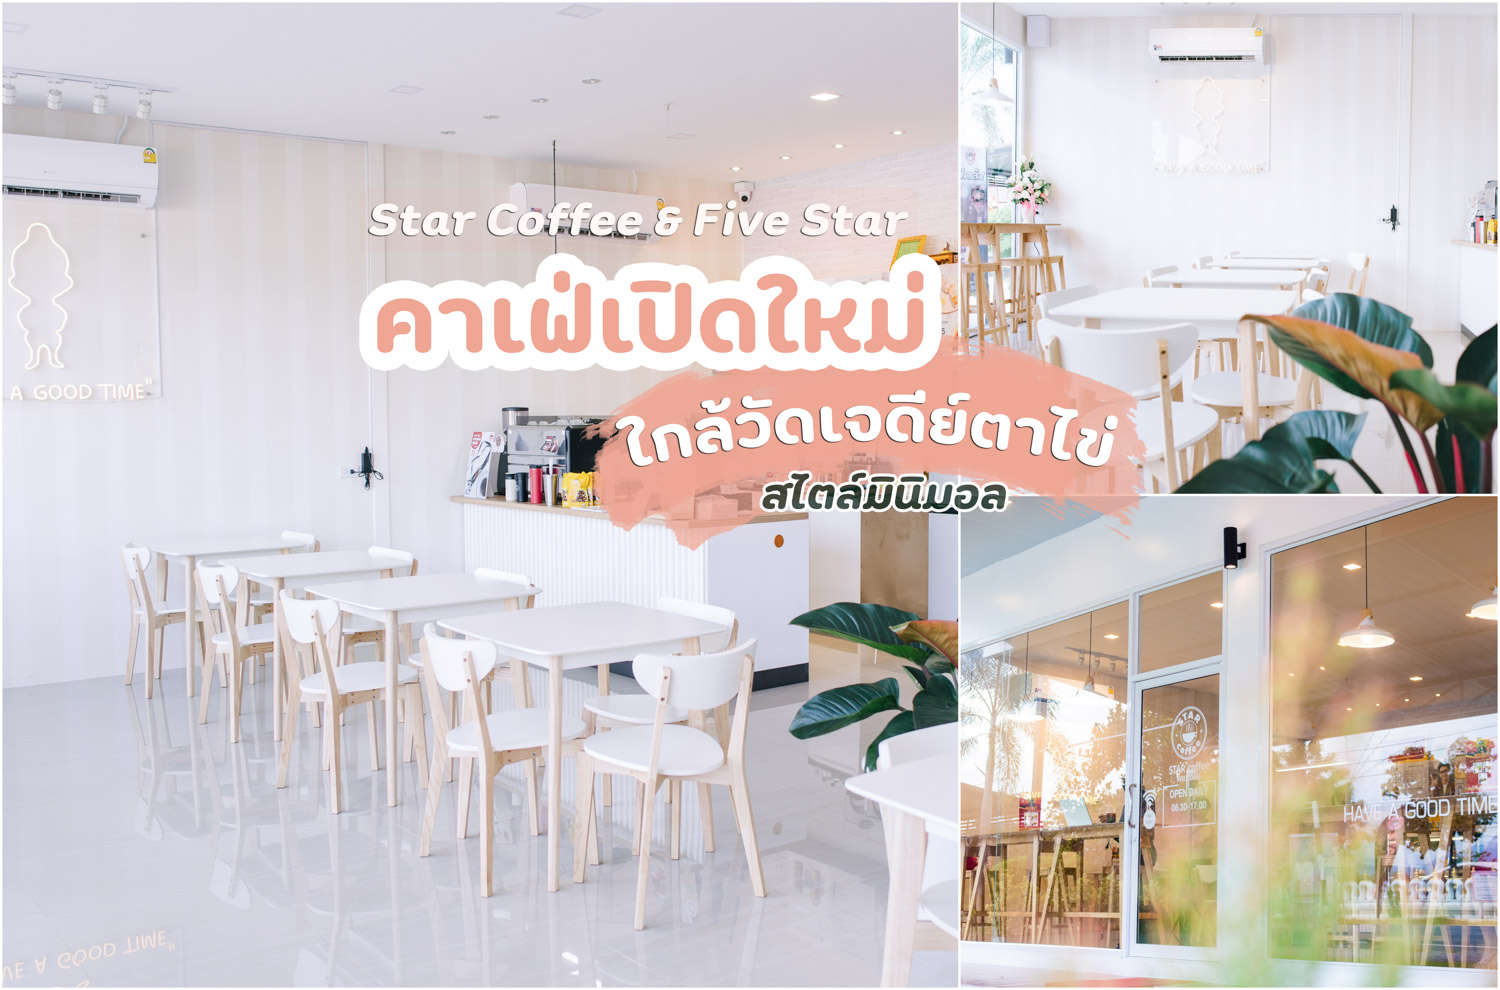 Star Coffee คาเฟ่ X Five Star ไก่ย่างห้าดาว วัดเจดีย์ตาไข่ สิชล นครศรีธรรมราช  ร้านสวยสไตล์มินิมอล